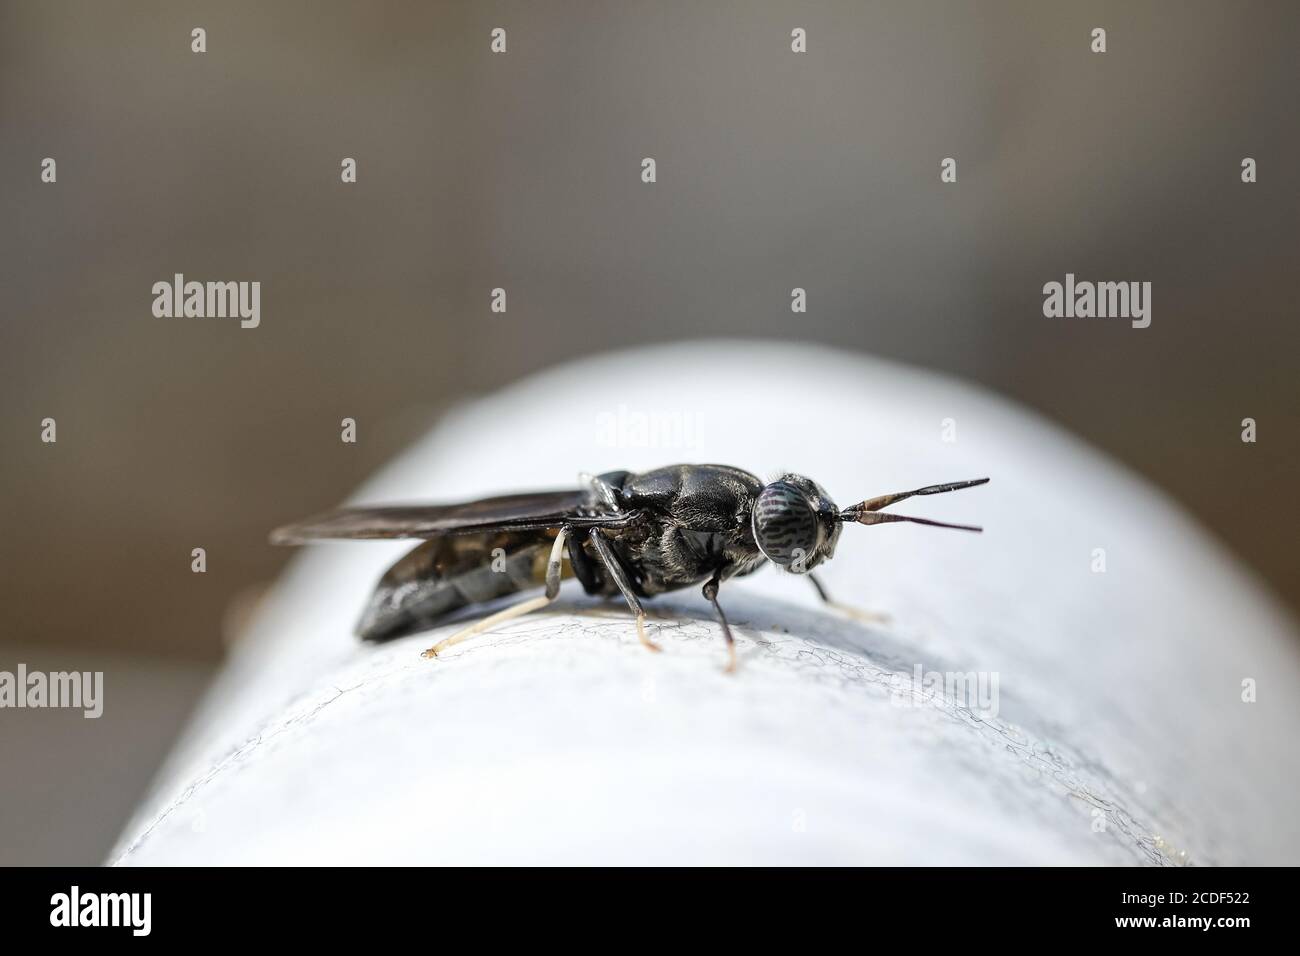 Bläulich Fliegen Insekt Körperteile Details, wild Makro Tier Natur Nahaufnahme Stockfoto